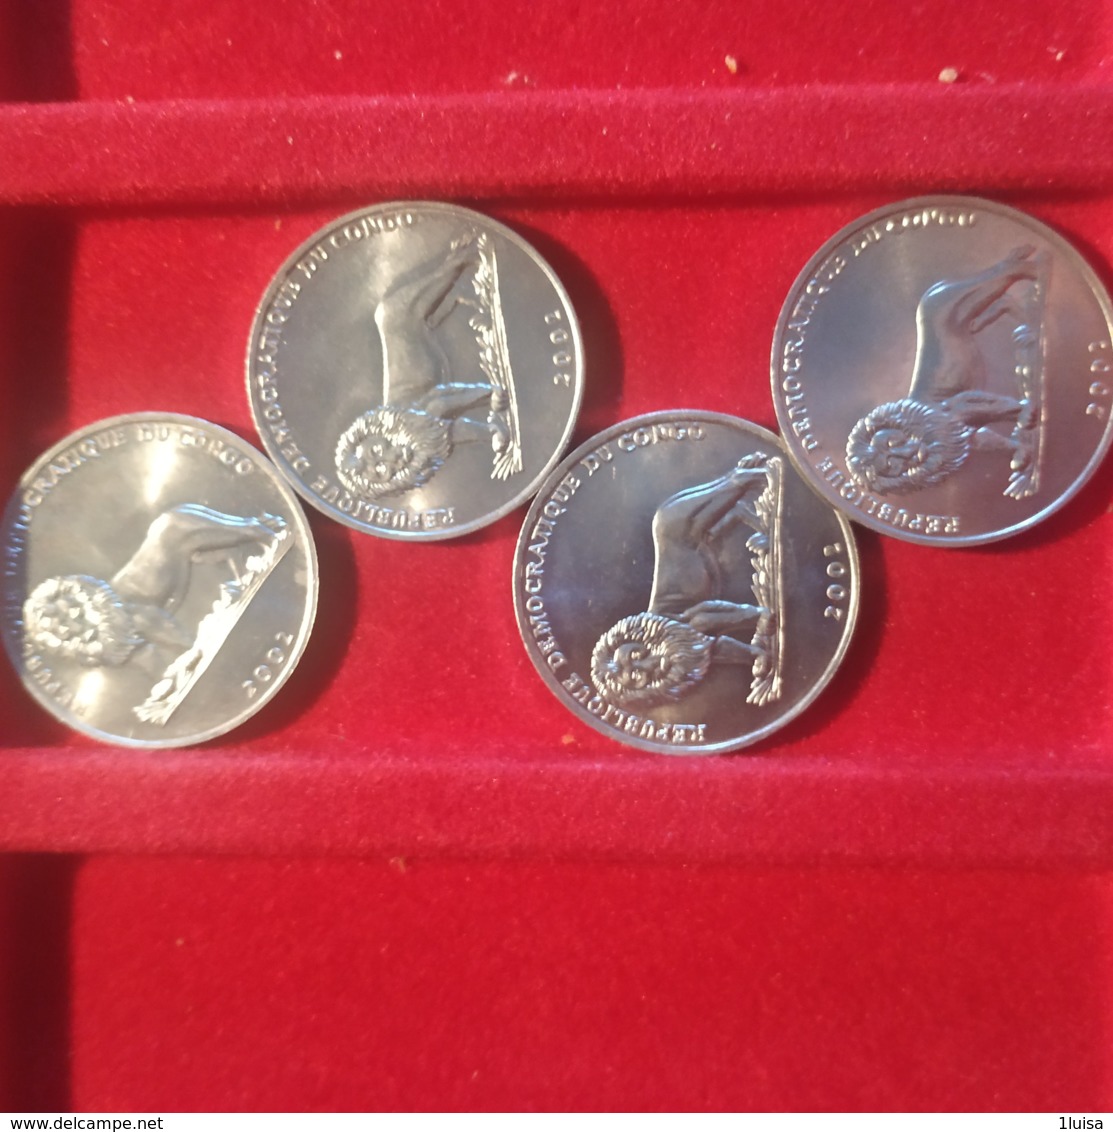 Congo Belga 50 Cents 2002 Per 4 - Congo (Democratische Republiek 1998)